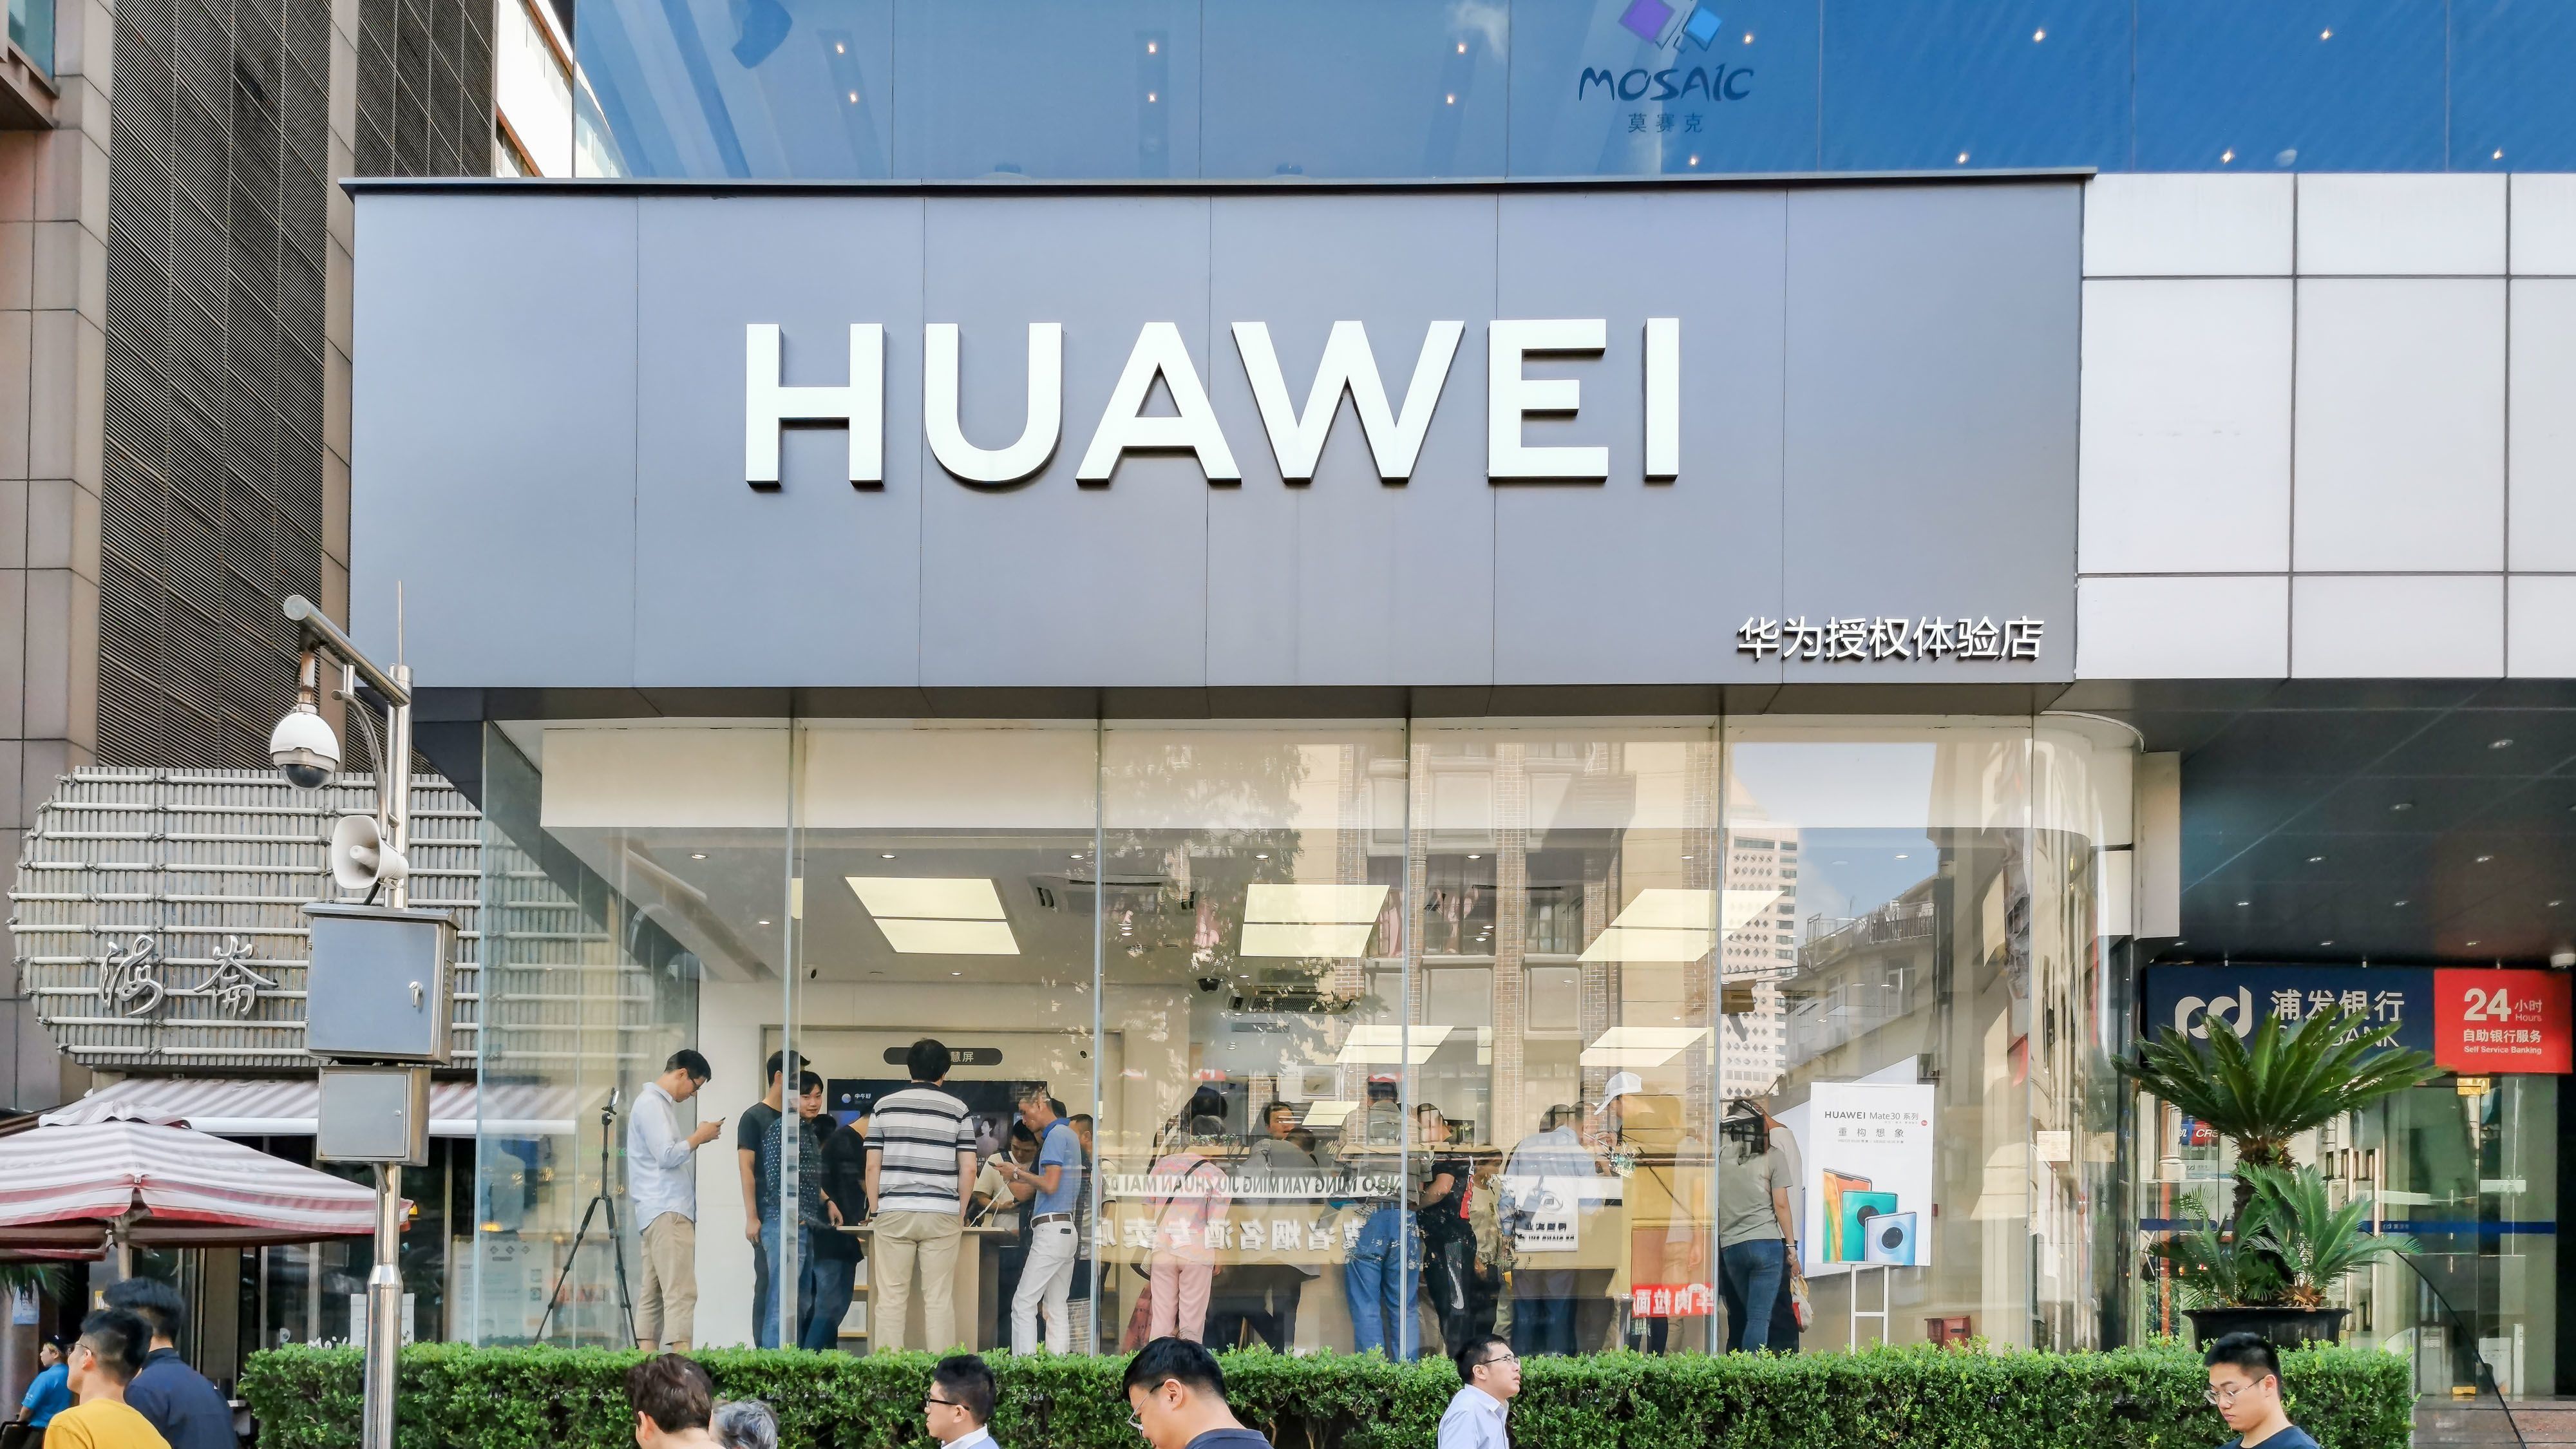 A németeknek nincs bajuk a Huawei-jel